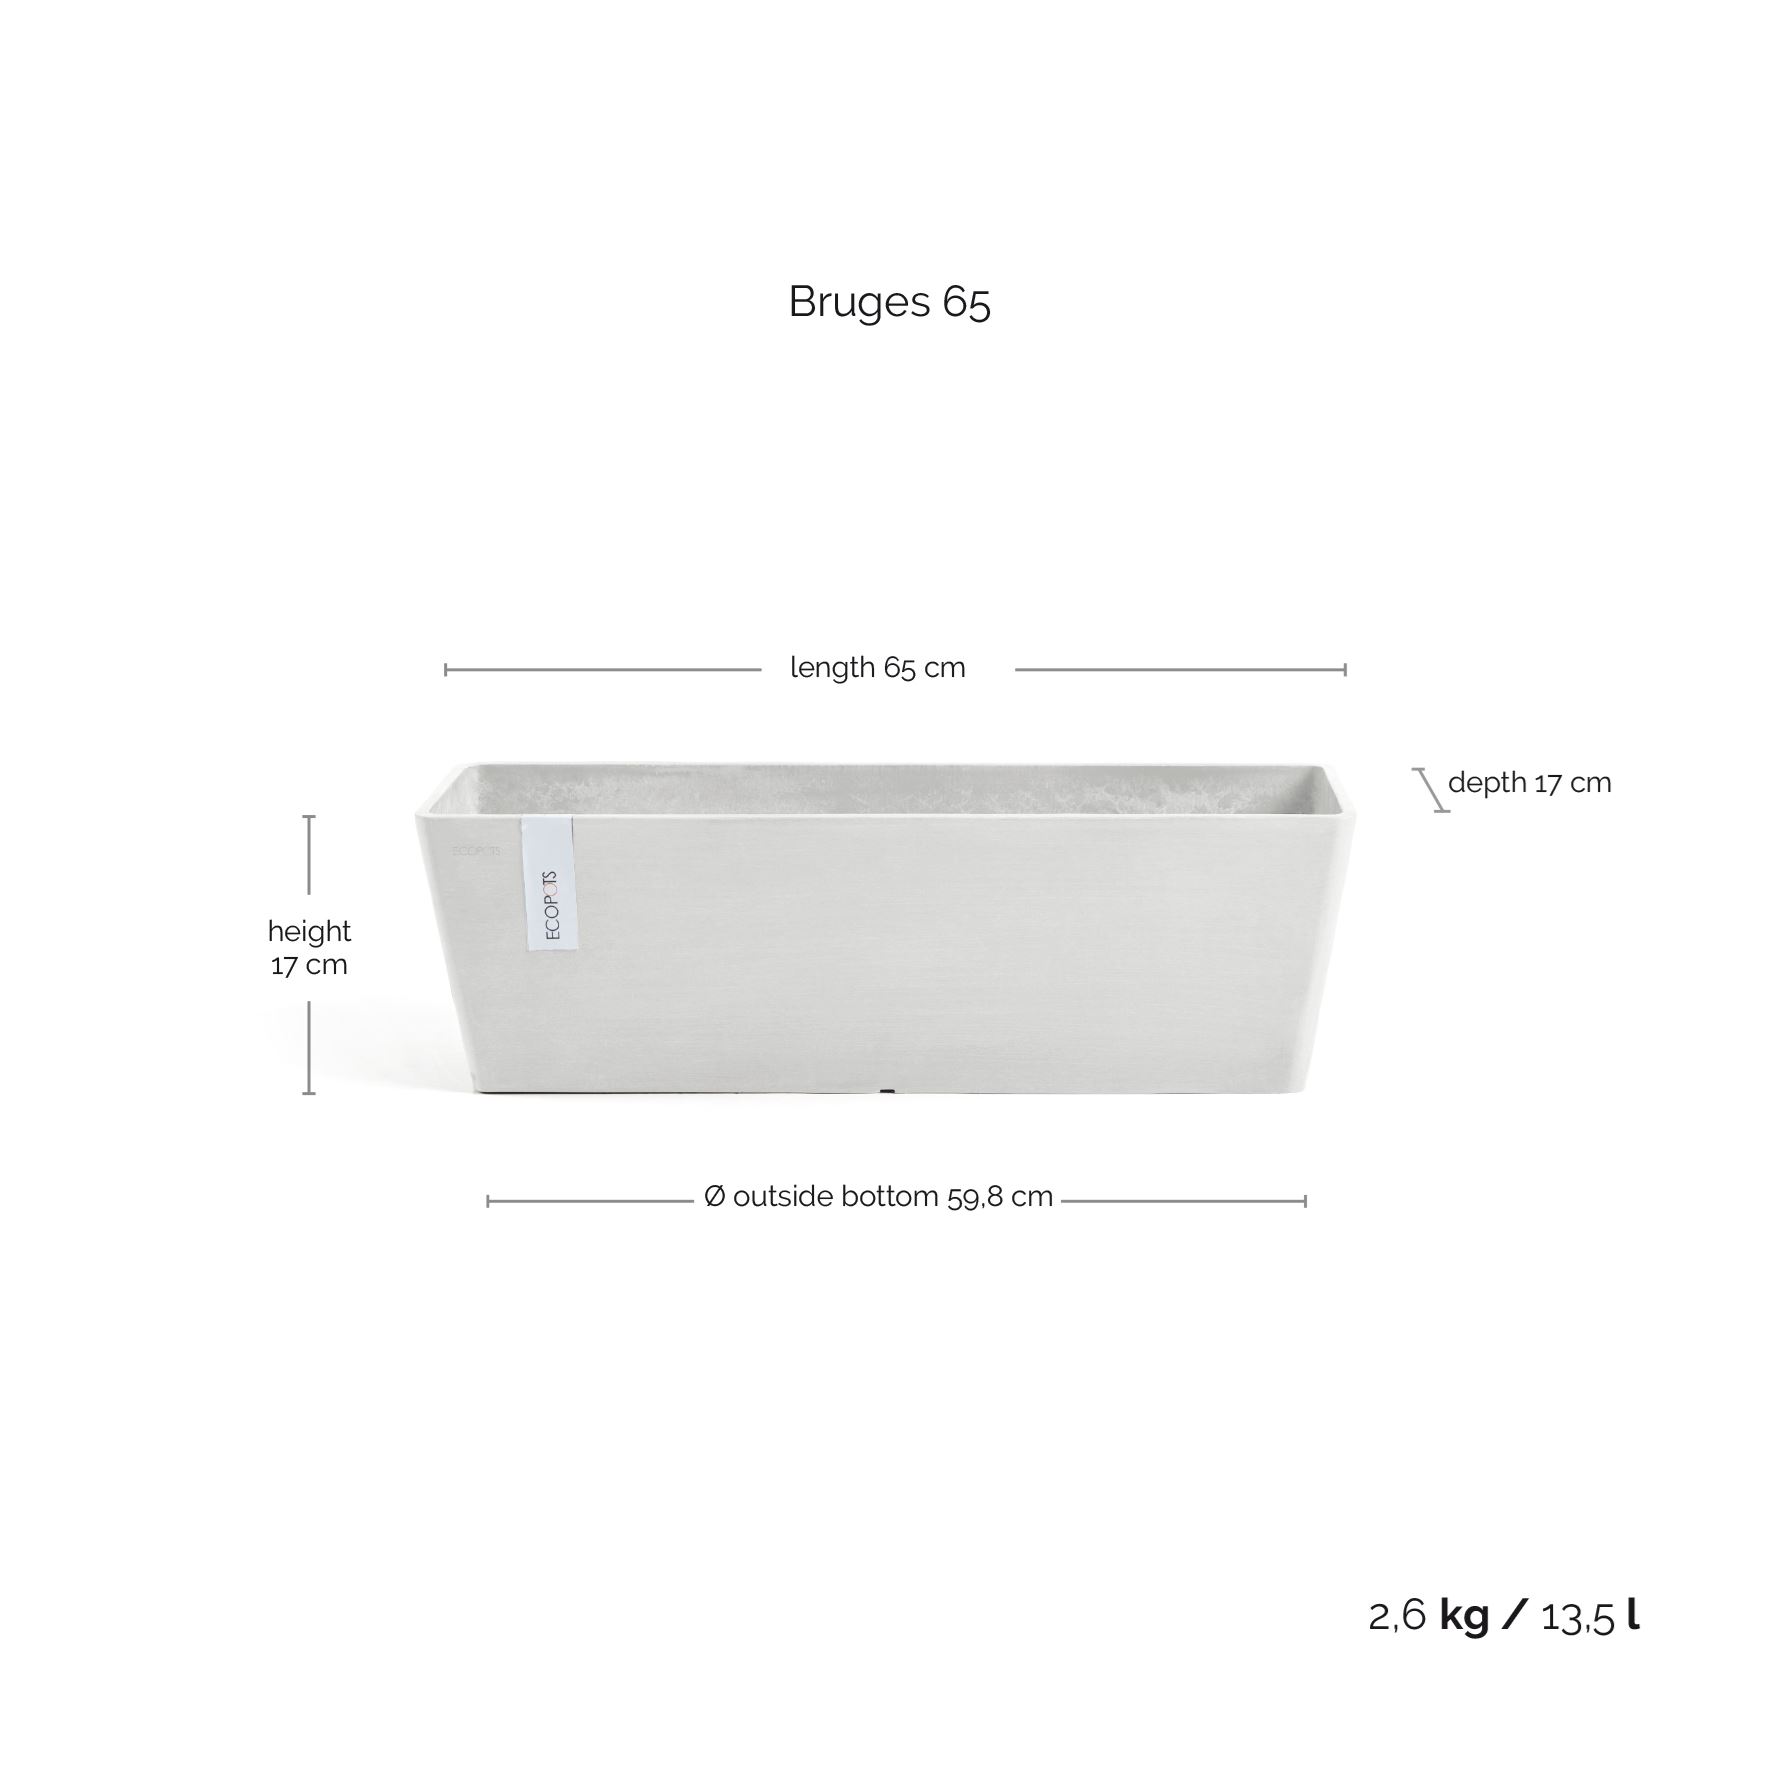 ecopots-Bruges-Pure-White-LBH-65x17x17-cm